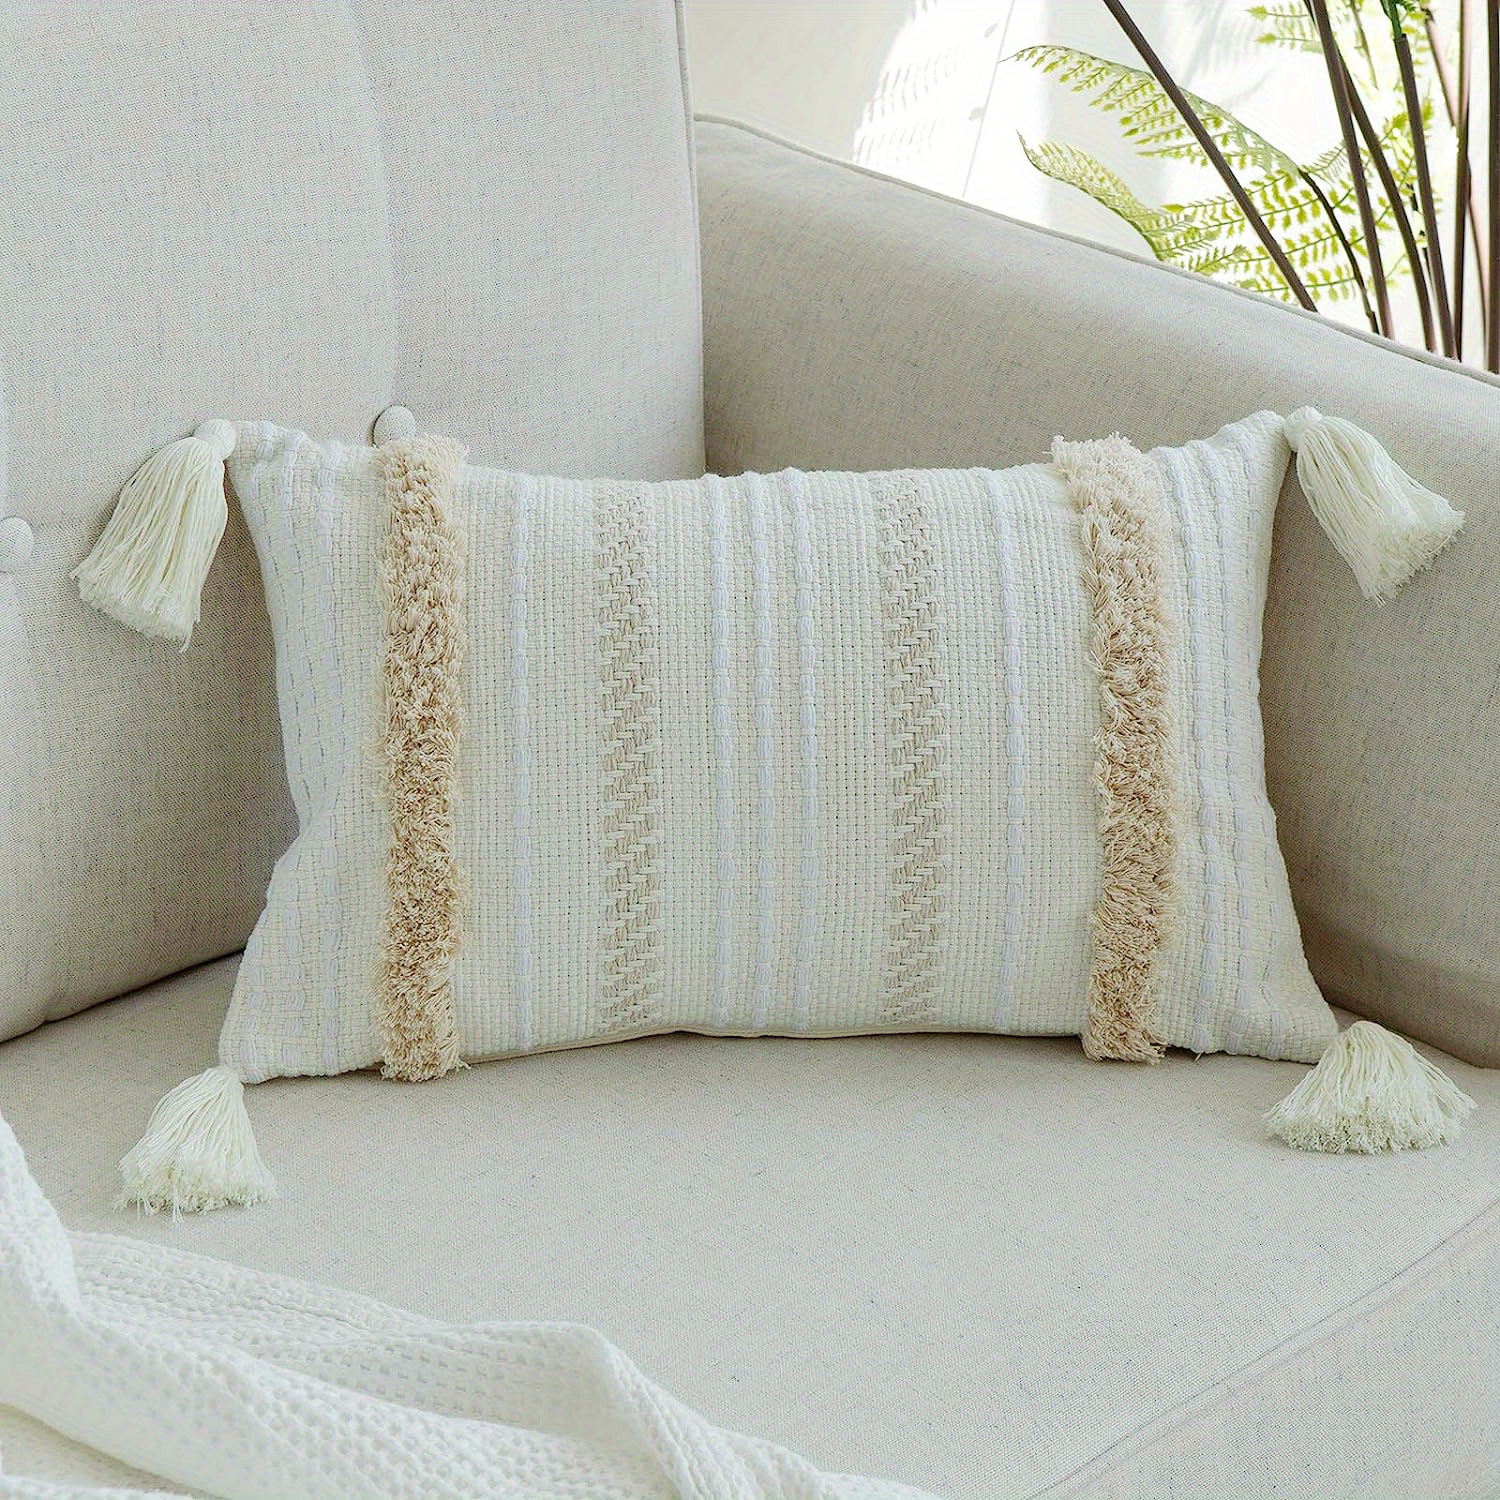 Textured White Pillow / Grey White Woven Throw Pillow / Modern Neutral  Pillow / White Cushion Cover / Minimalist Pillow Cover